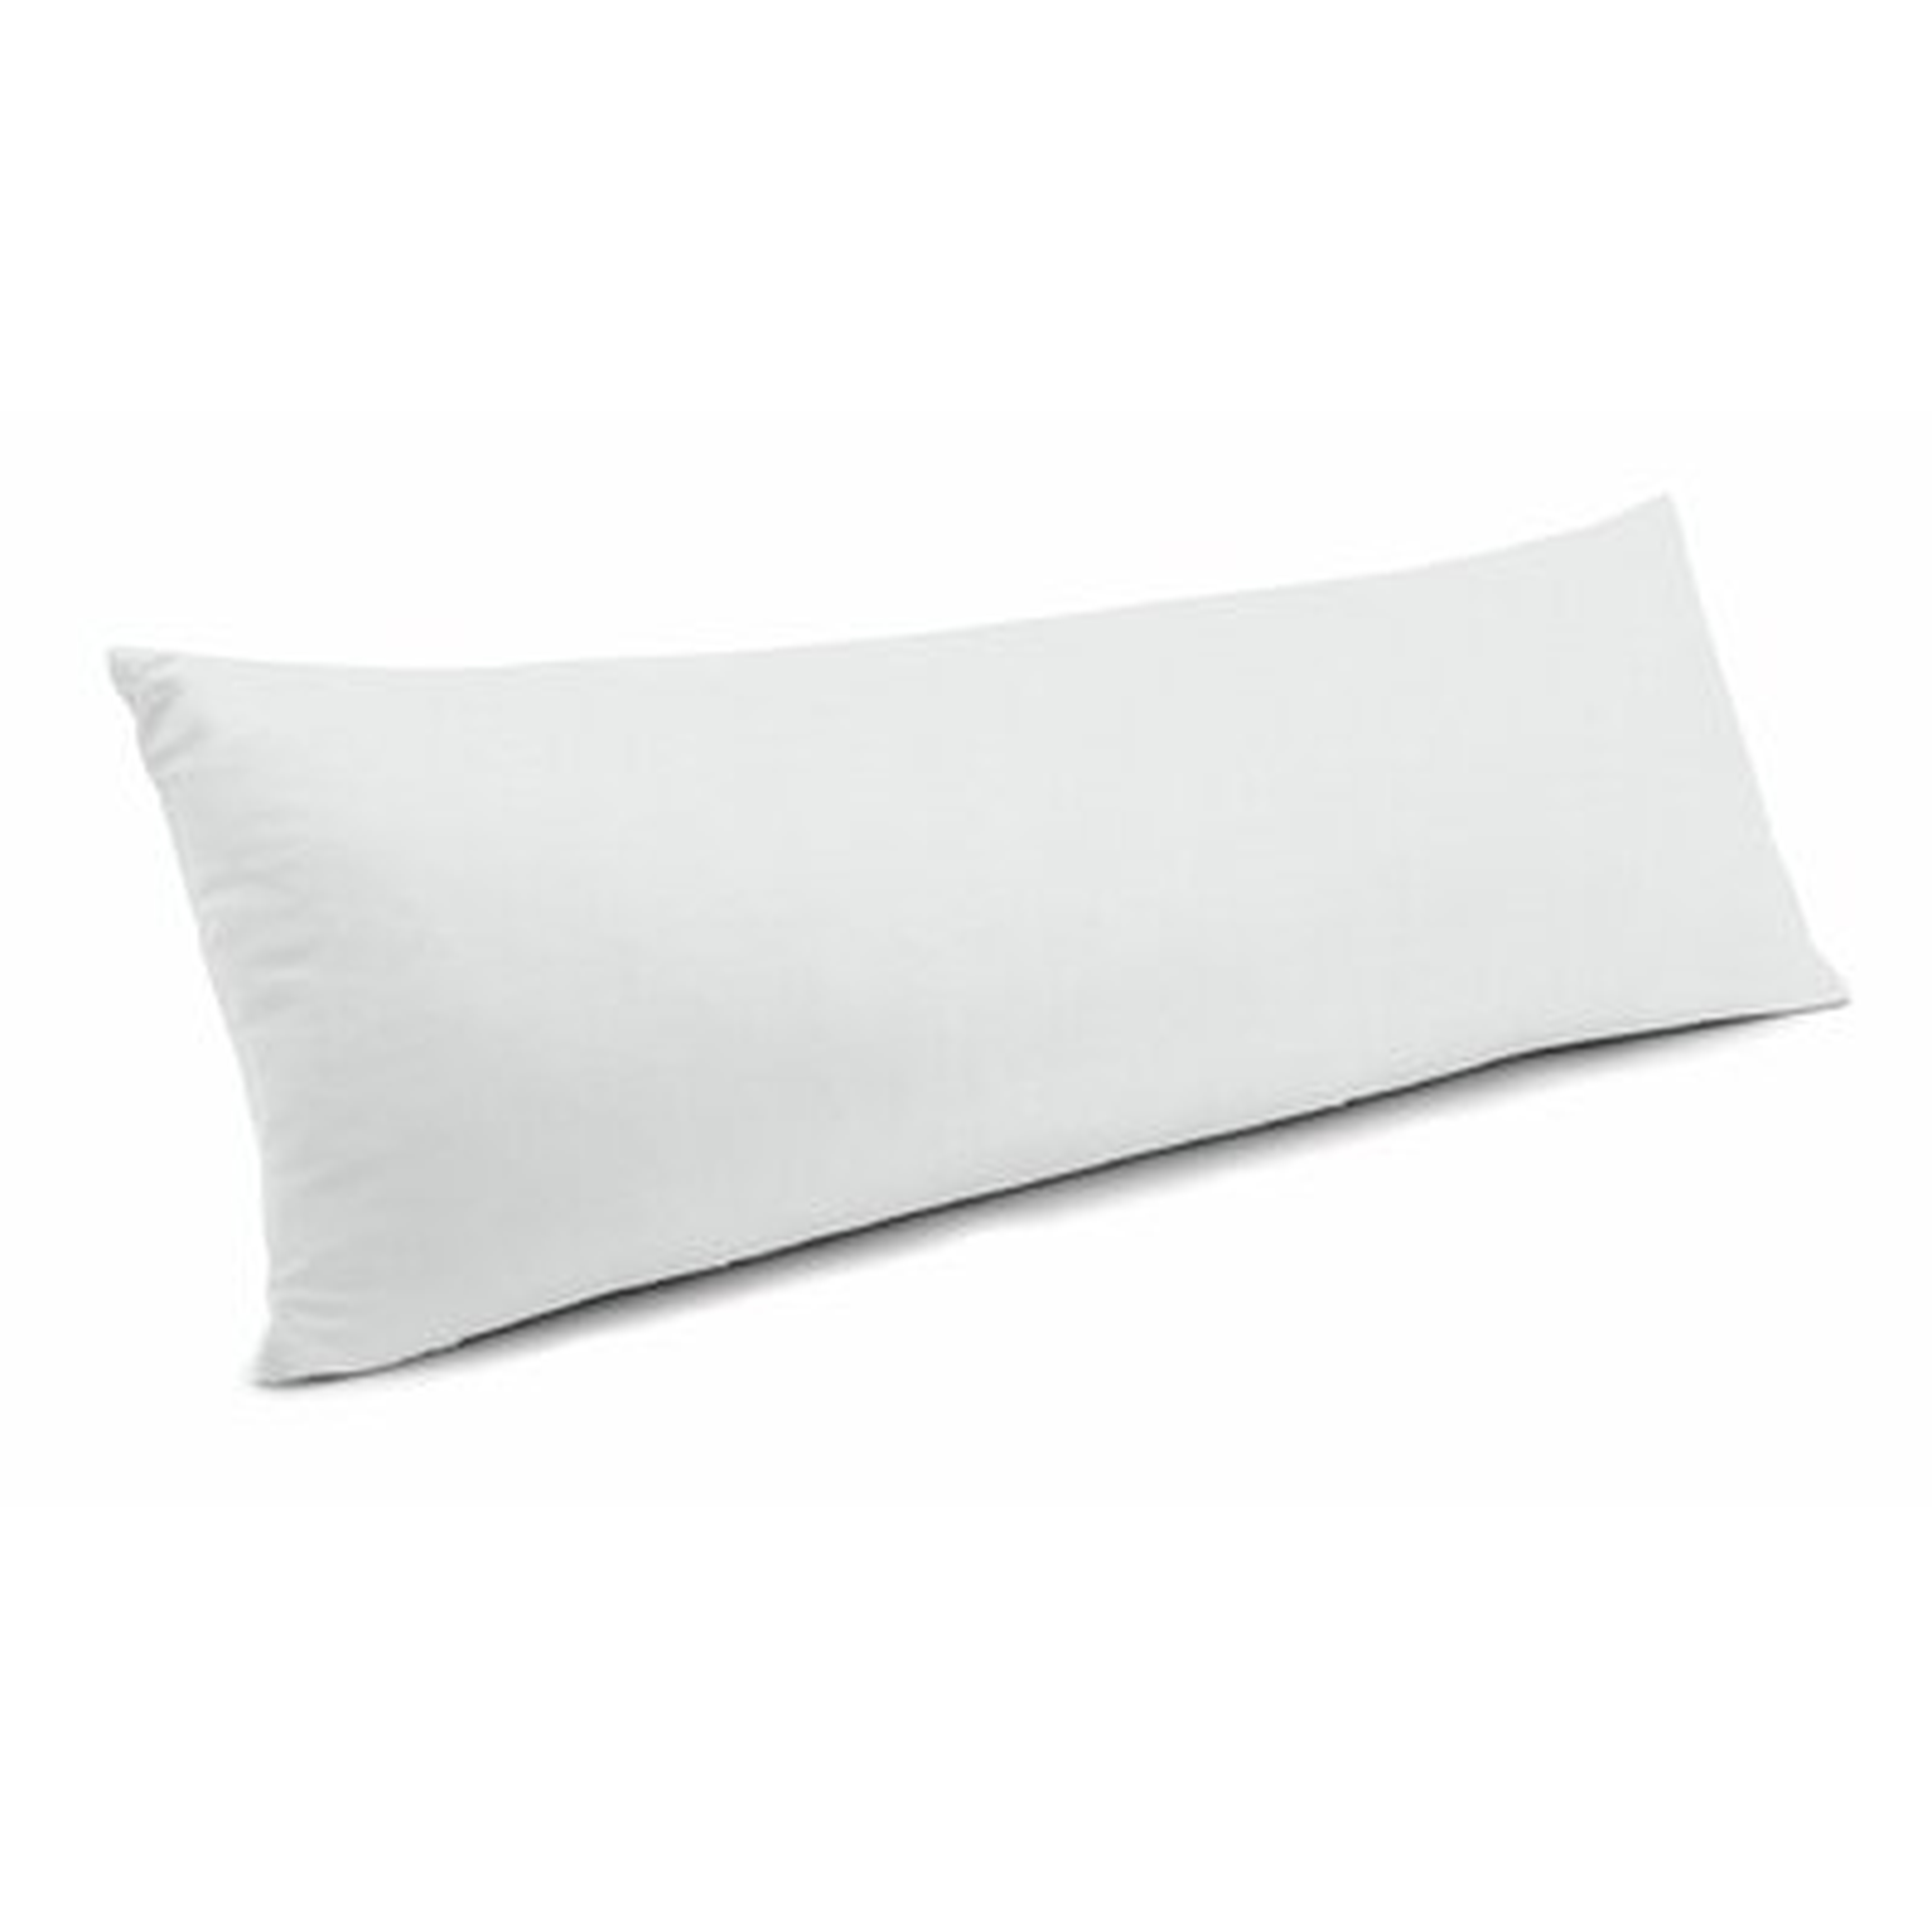 Rectangular Pillow Cover & Insert - Wayfair